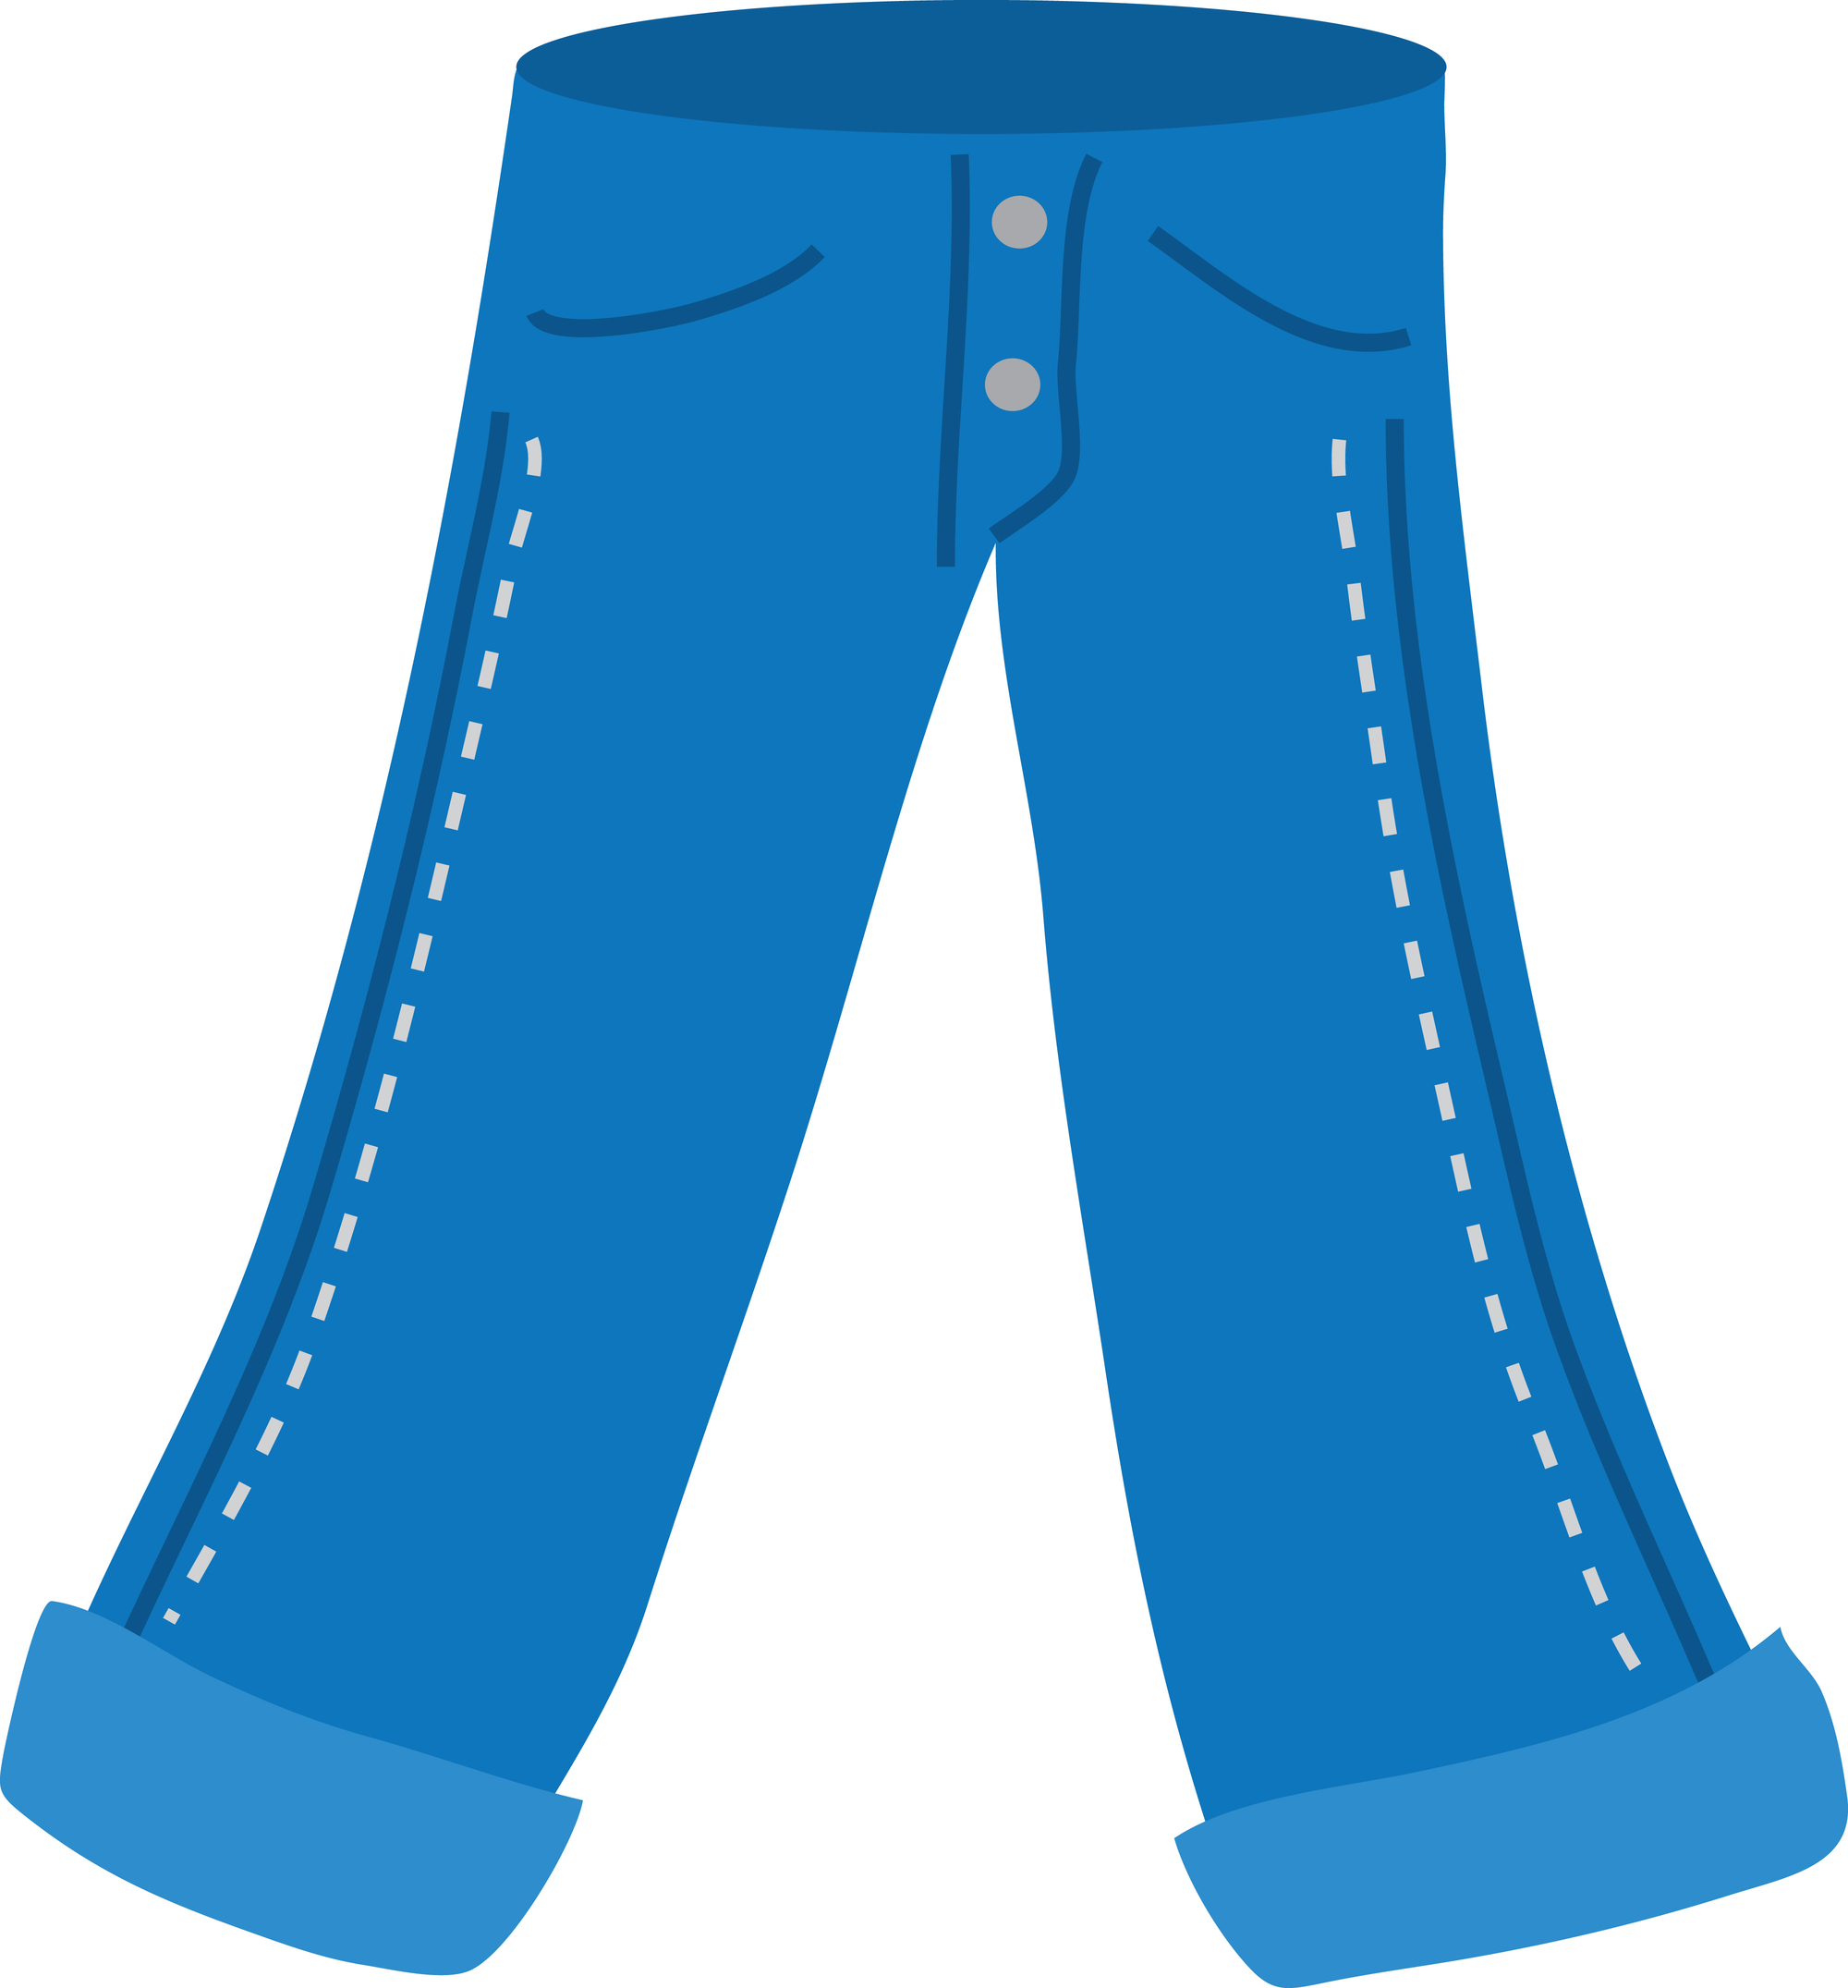 Clipart boy template blue jean pants